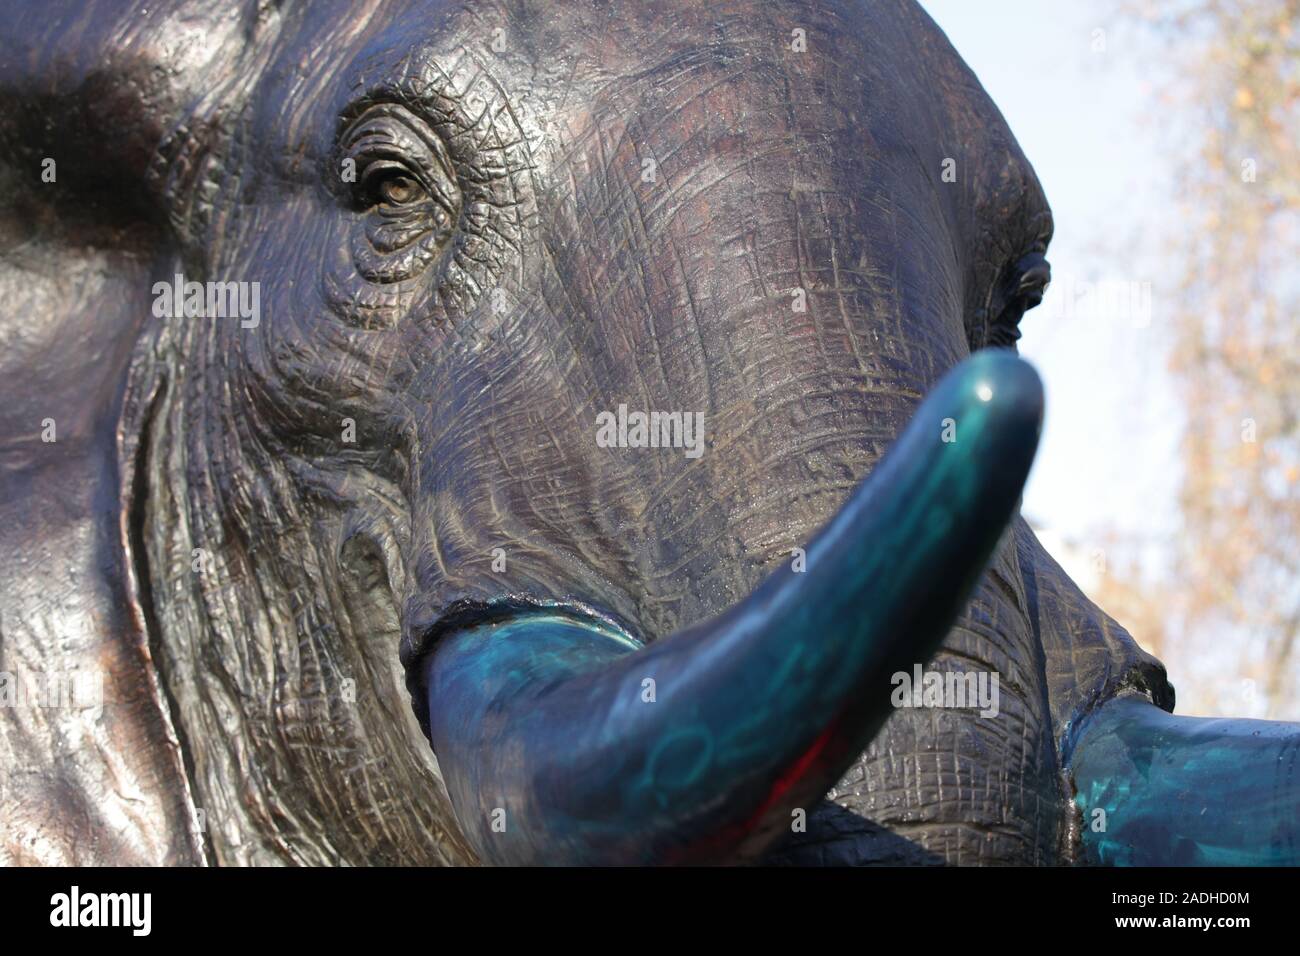 Detail aus einem der 21 Bronze lebensgroße Elefanten am Marble Arch Inn, London vorgestellt, die Notlage der Arten, die vom Aussterben bedroht Flächen bis 2040 markieren. Stockfoto